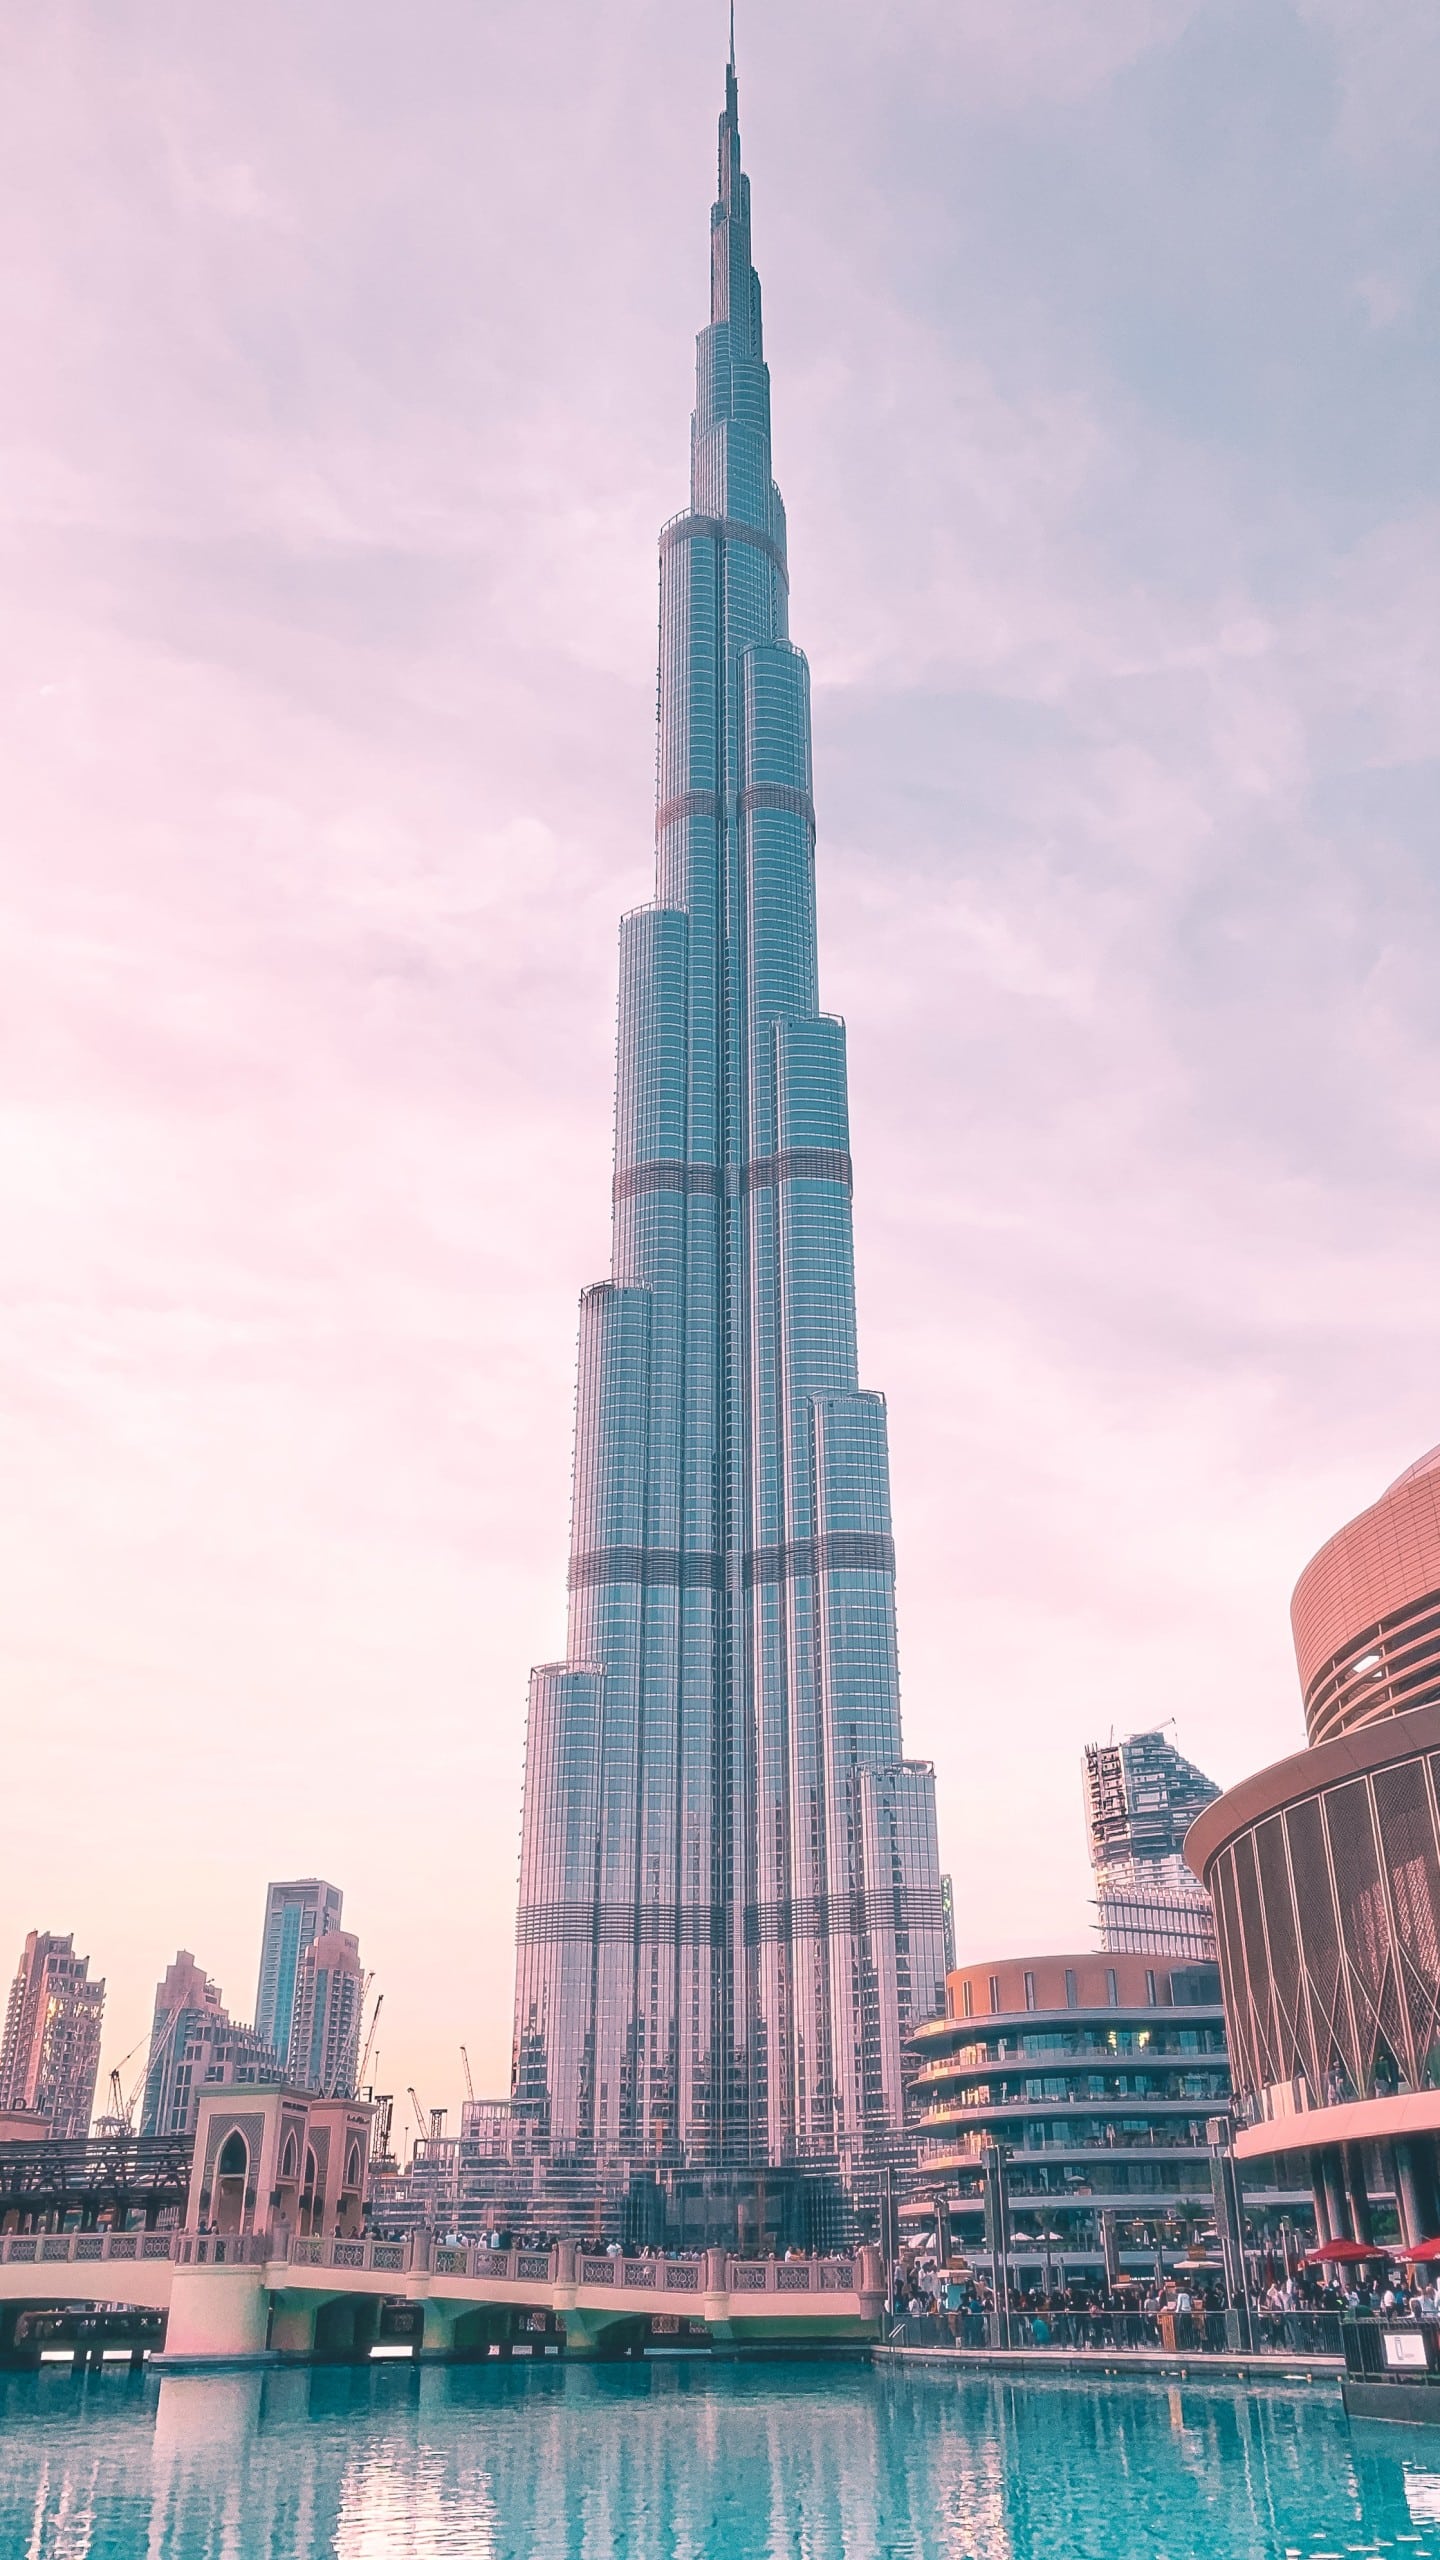 Das Burj Khalifa in Dubai ist mit 828 Metern das höchste Gebäude der Welt. Bildquelle: Unsplash